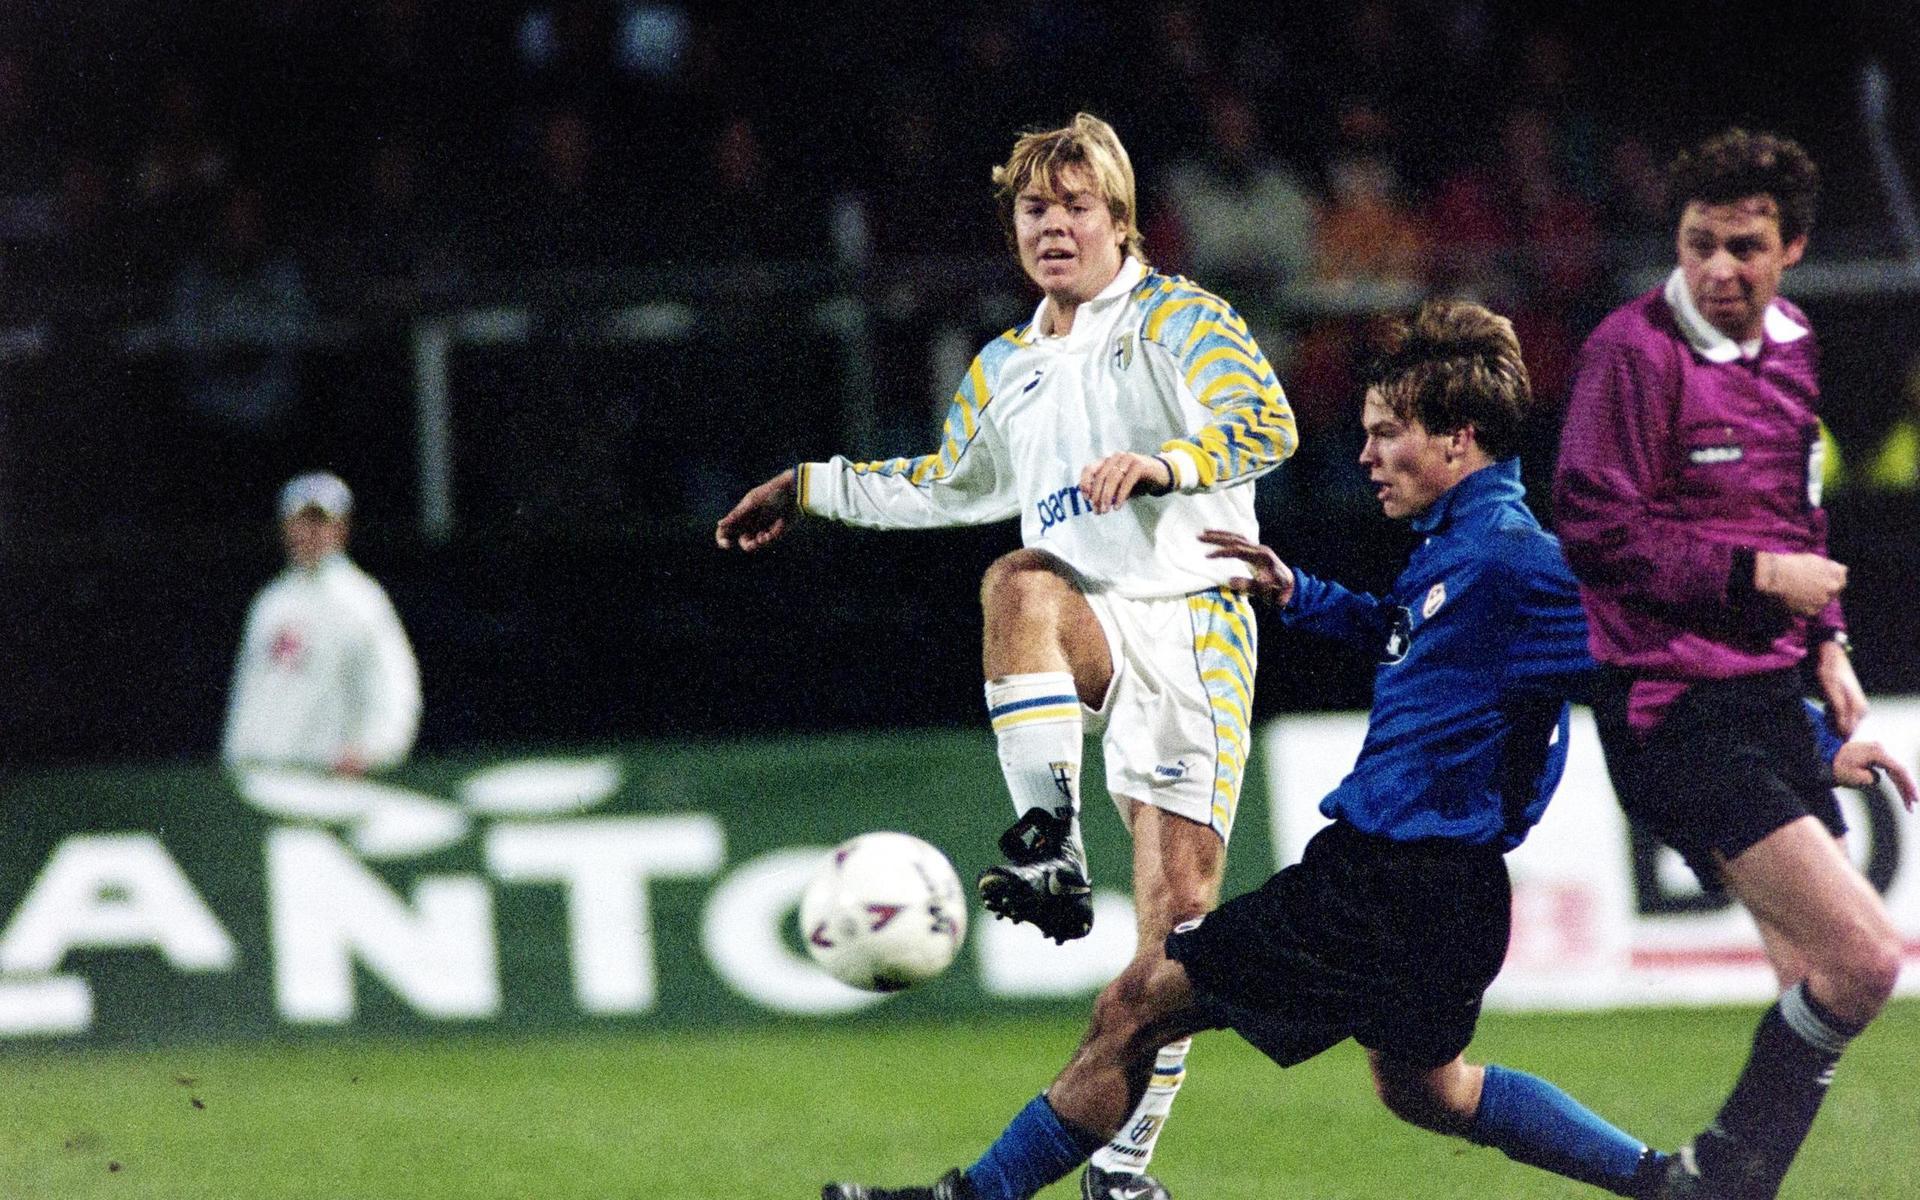 En dåtida världsstjärna och en framtida möttes på Gamla Ullevi denna dag för 25 år sedan, Tomas Brolin i Parma och en ung Fredrik Ljungberg.